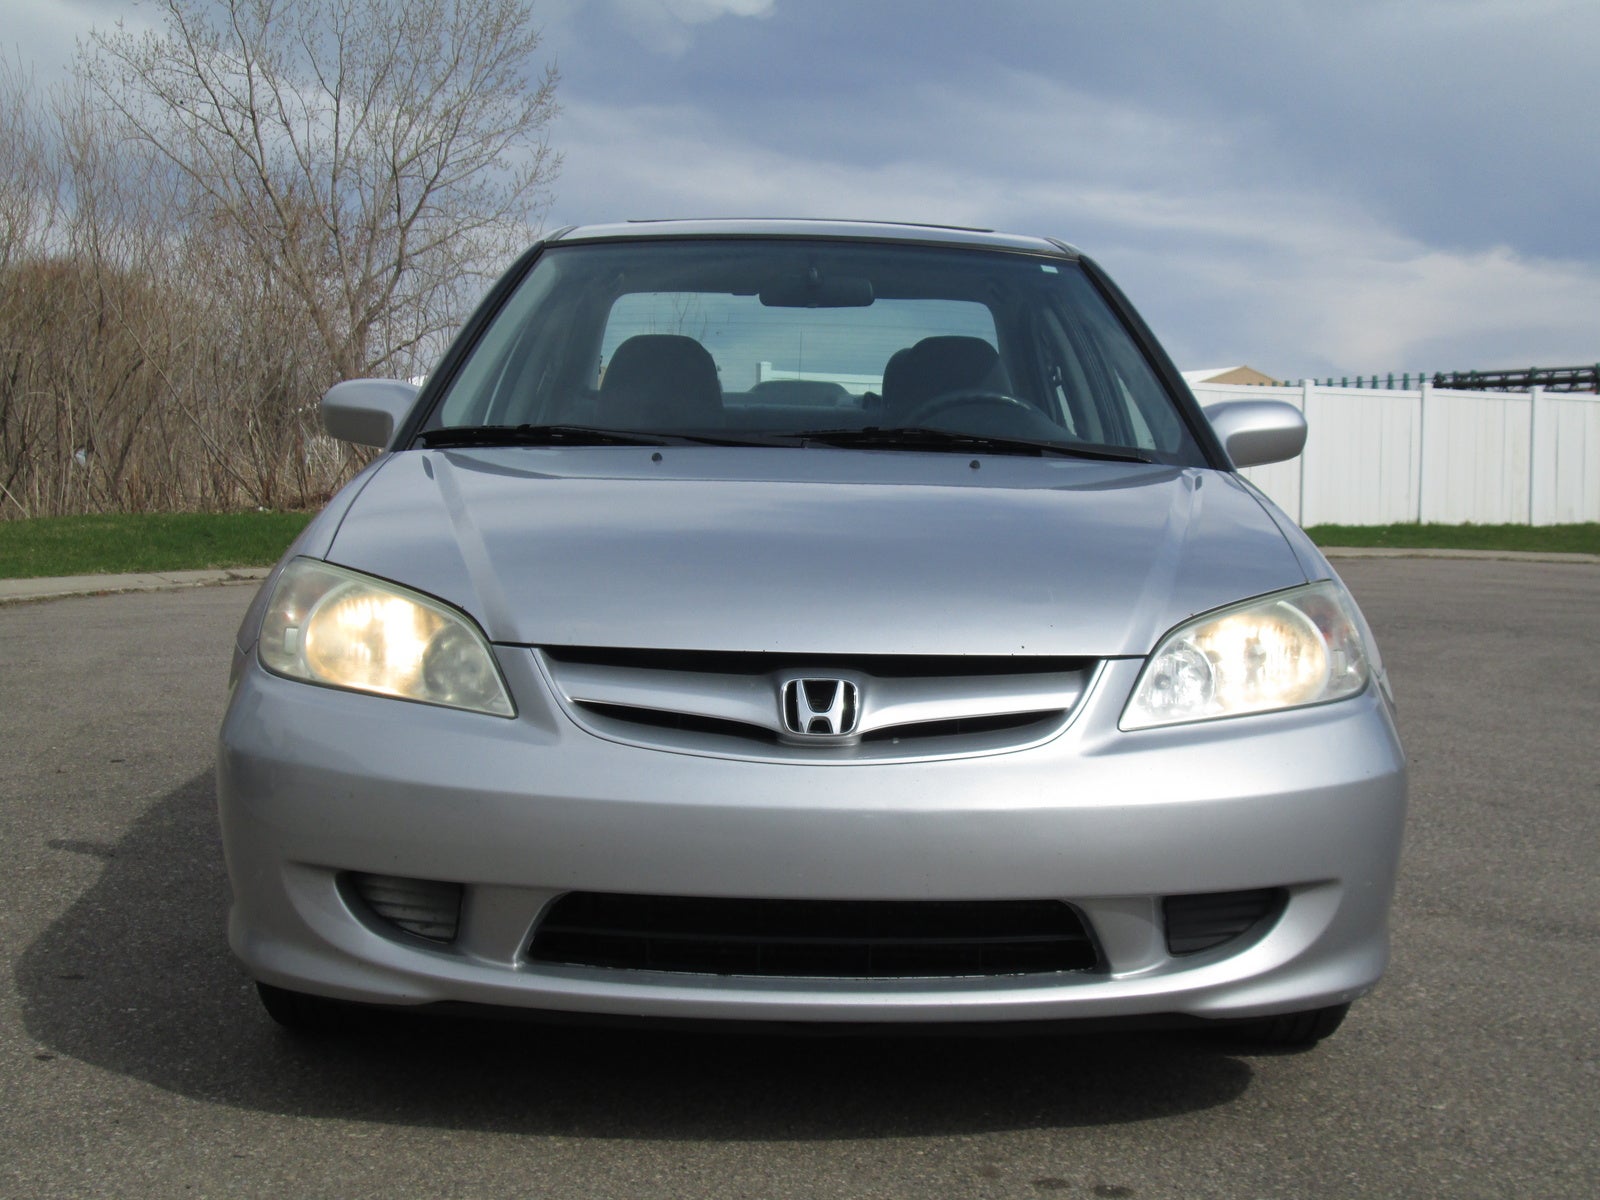 2004 Honda Civic Pictures CarGurus